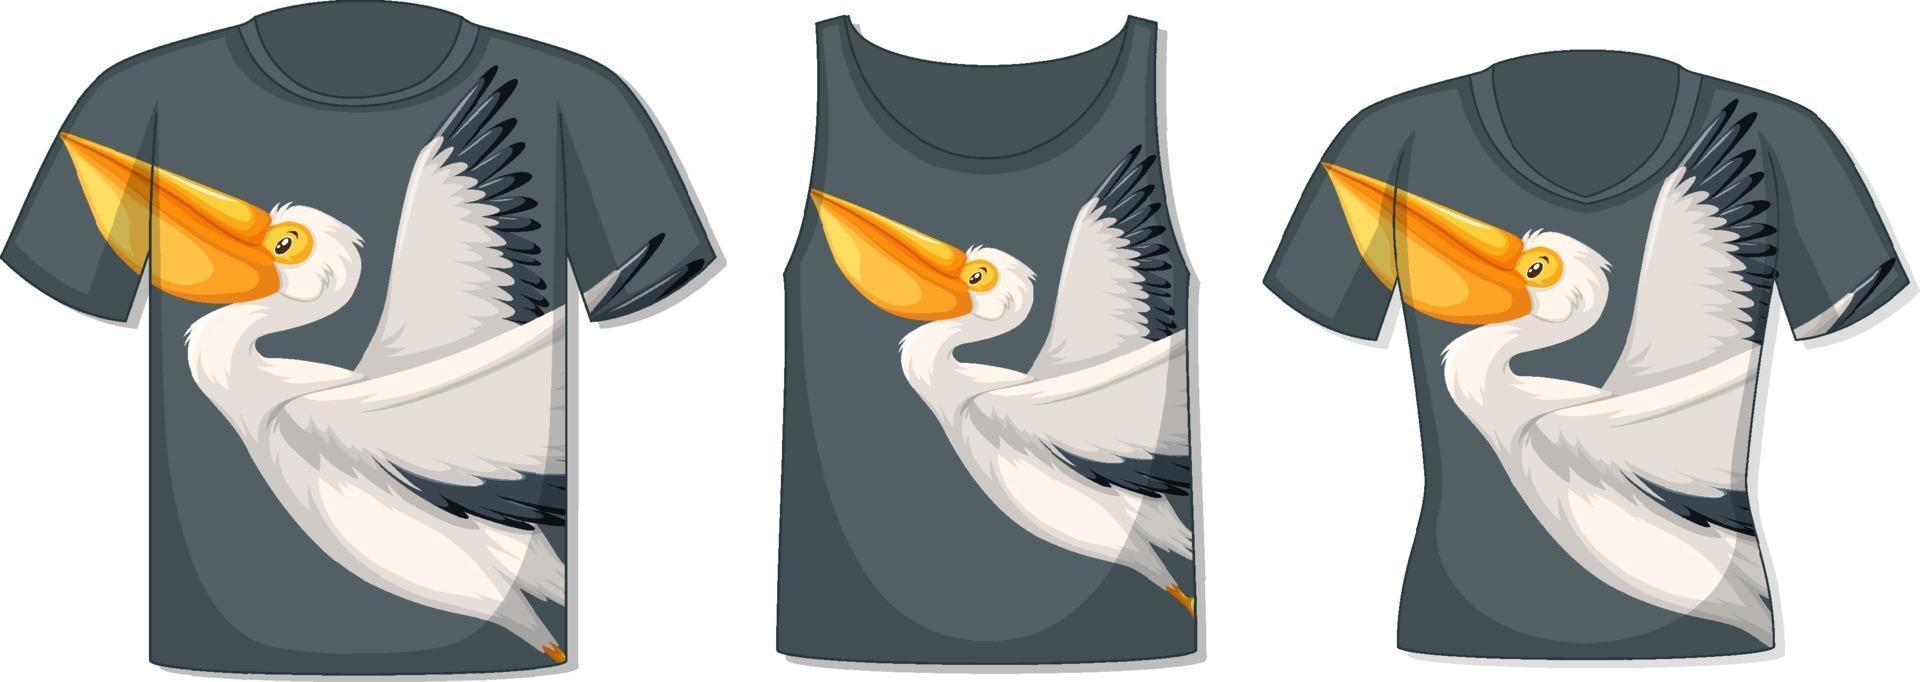 voorkant van t-shirt met pelikaansjabloon vector